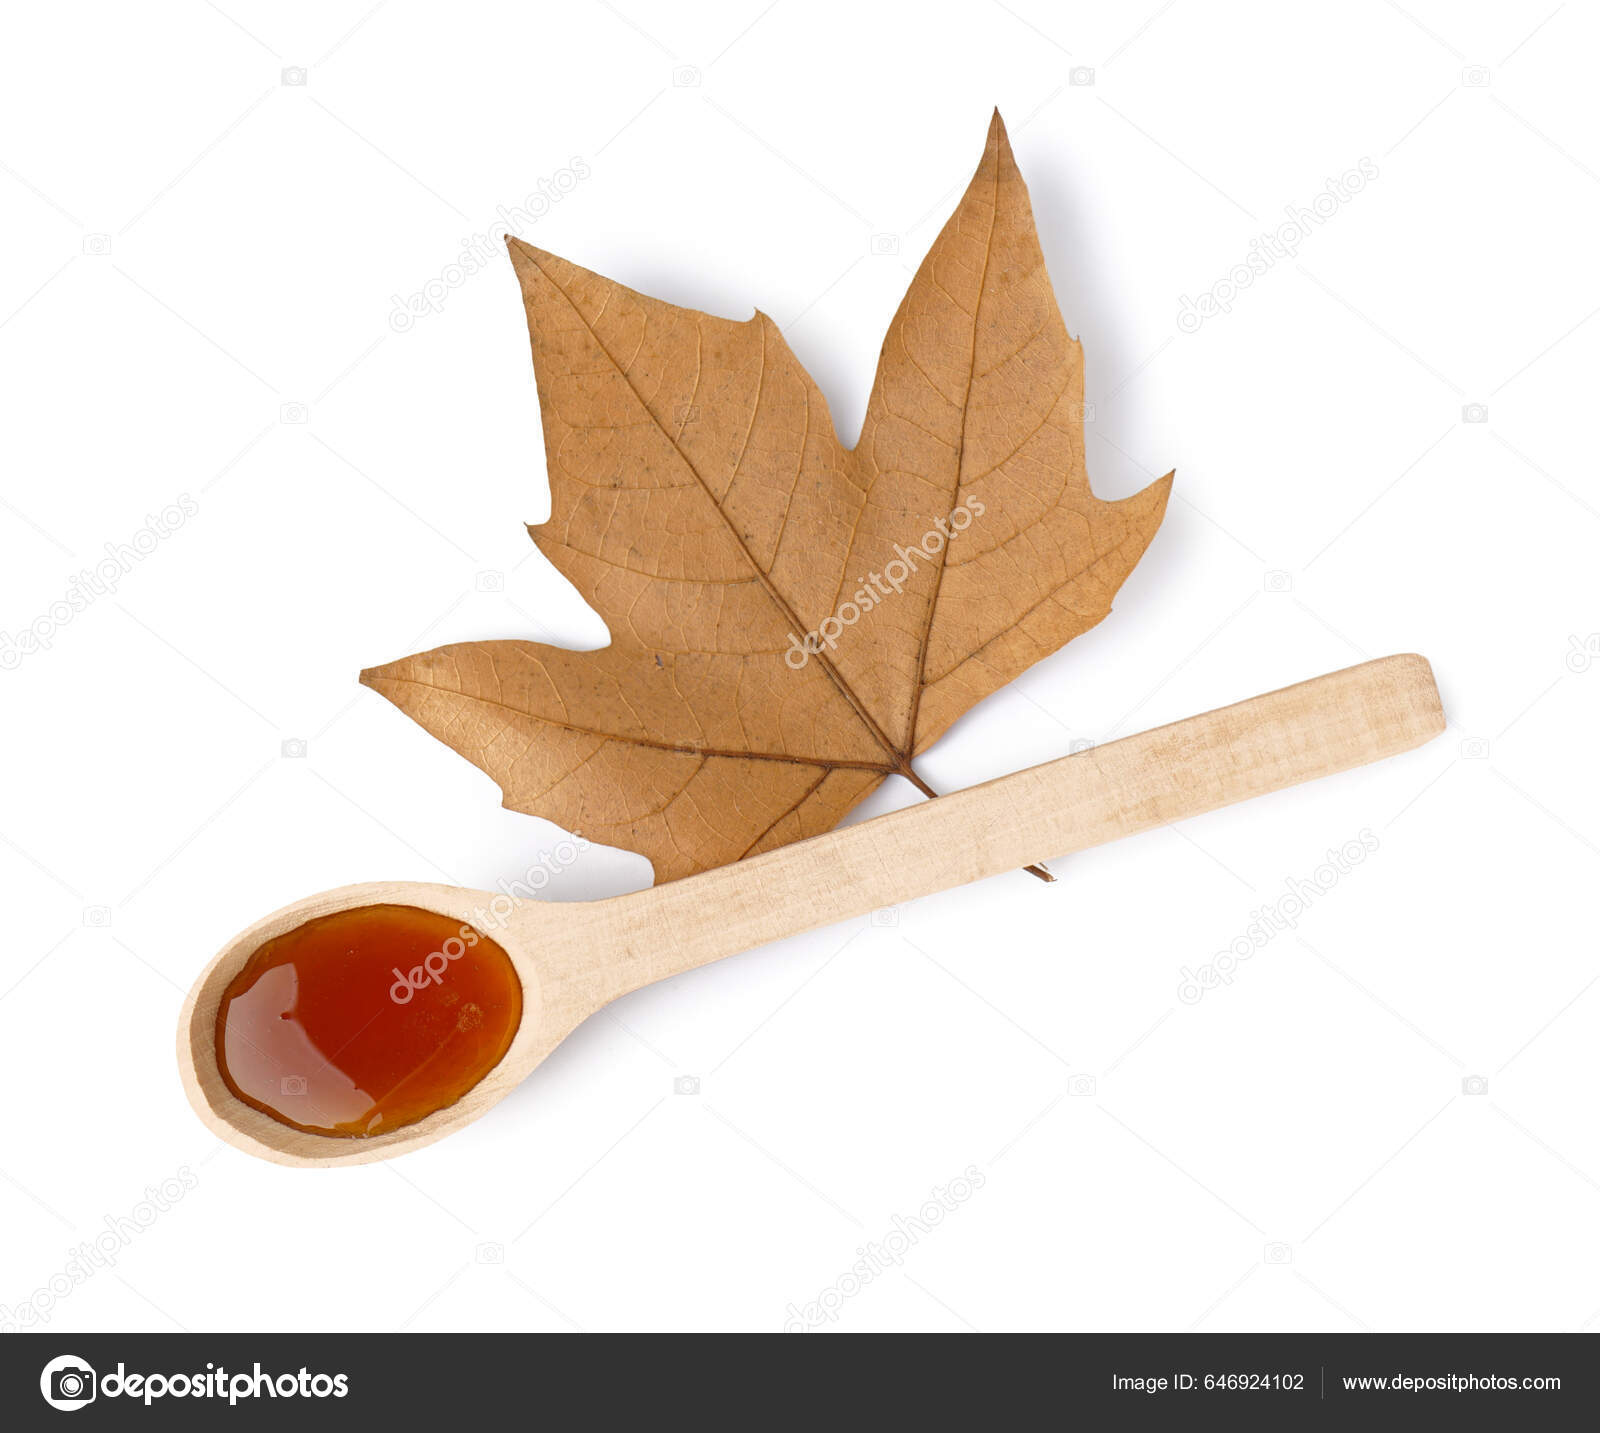 Coletando Seiva Do Tronco Da árvore De Maple Para Produzir Xarope